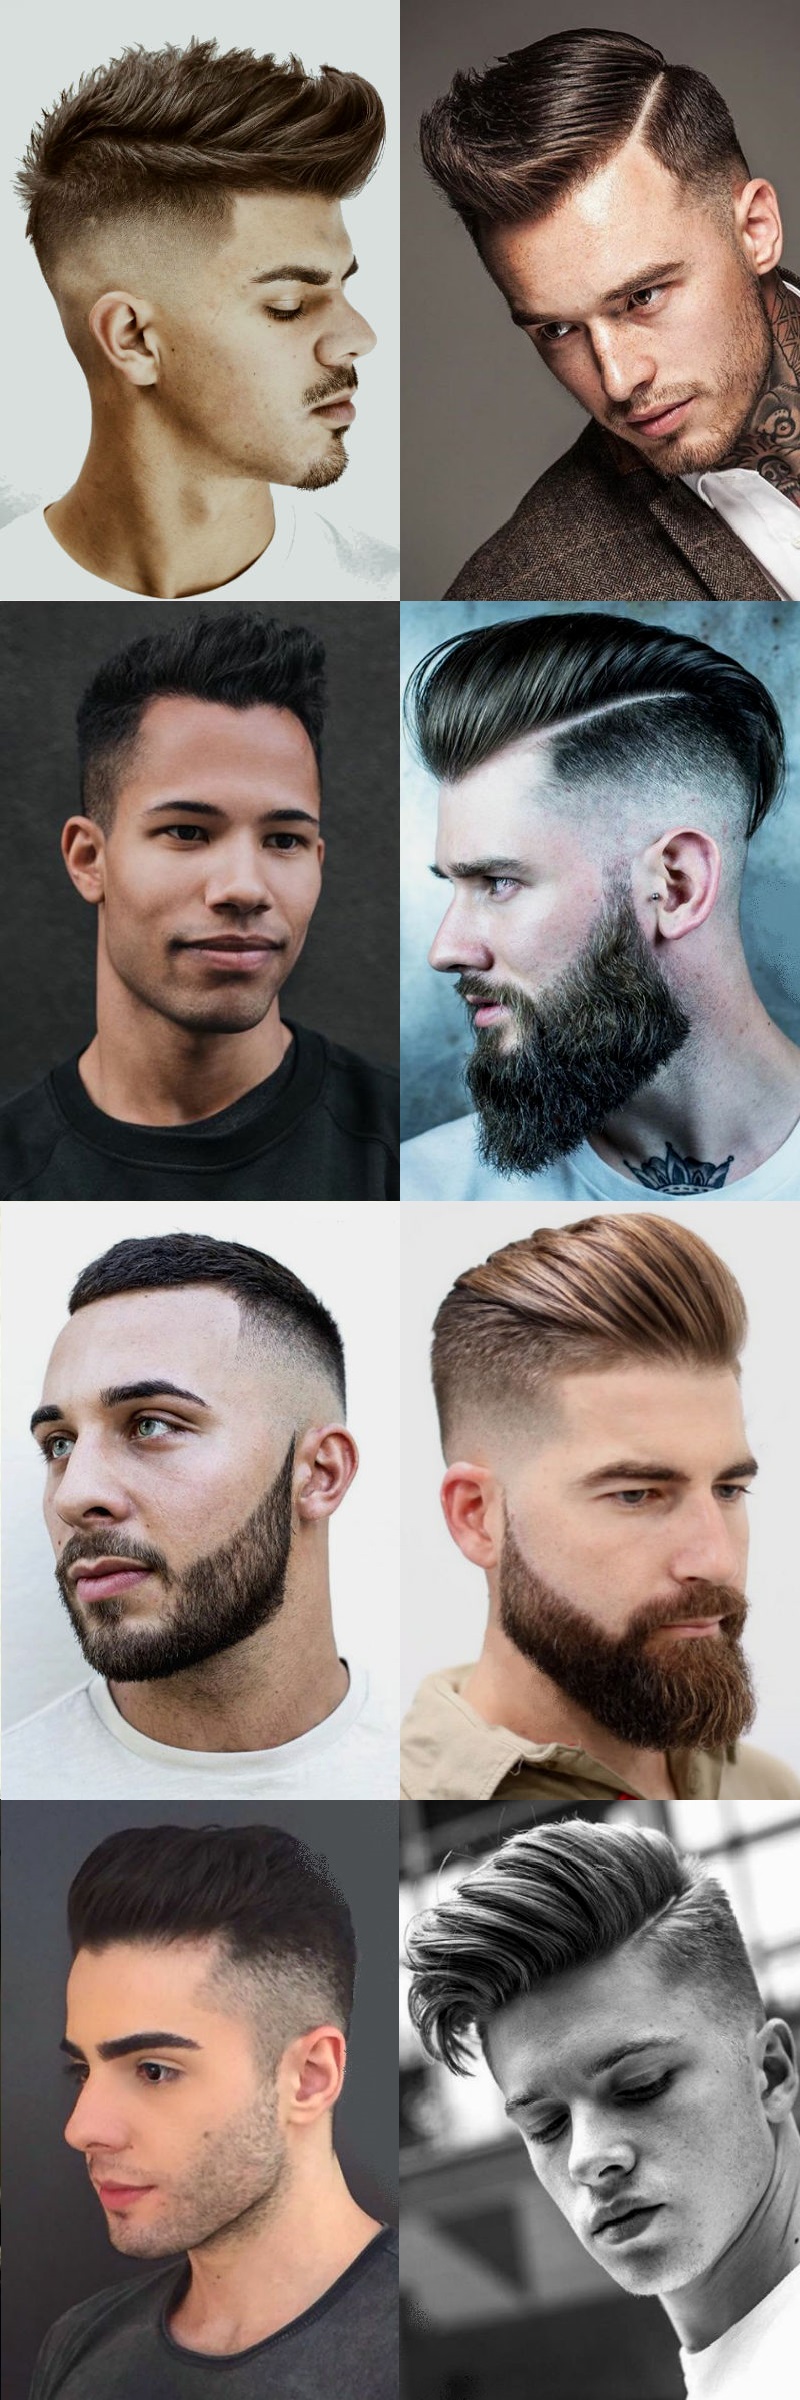 homem-no-espelho-cortes-de-cabelo-masculinos-2017-degrade